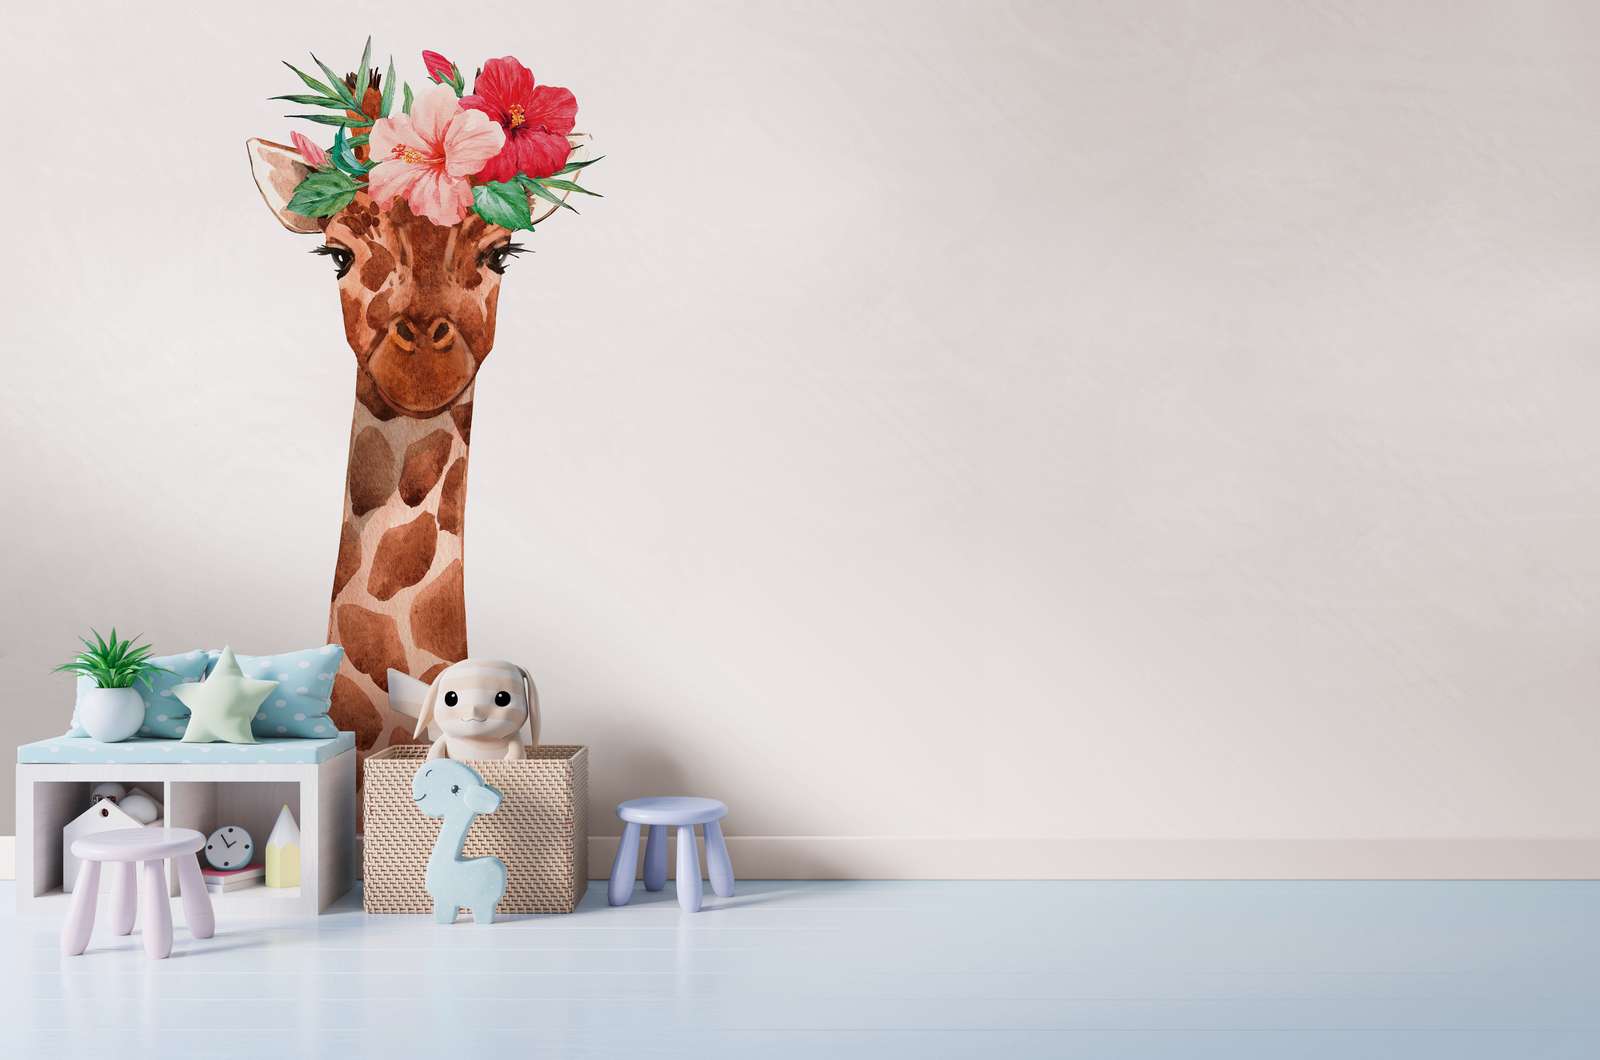             Papier peint panoramique chambre d'enfant avec girafe et coiffe florale - blanc, multicolore
        